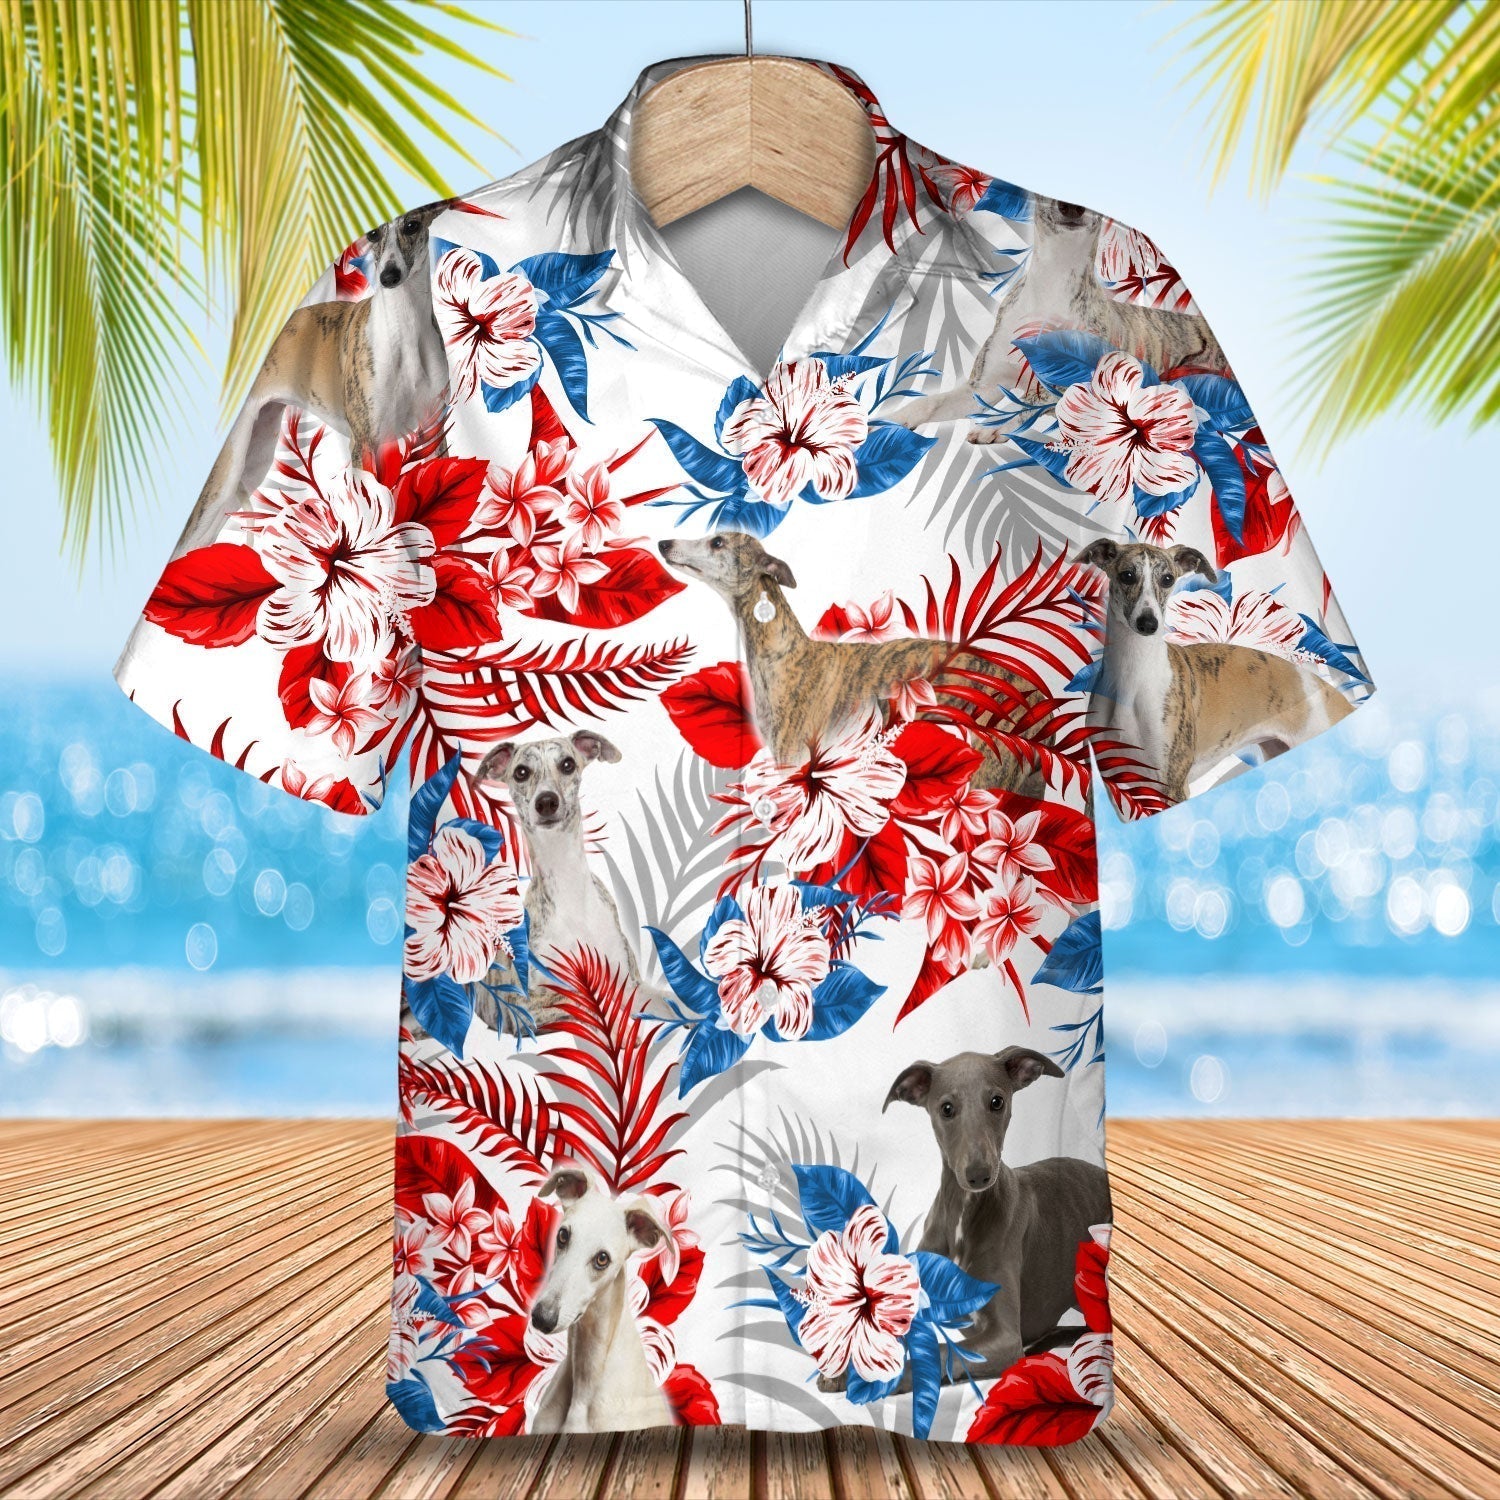 Whippet Hawaiian Shirt - Gift for Summer/ Summer aloha shirt/ Hawaiian shirt for Men and women